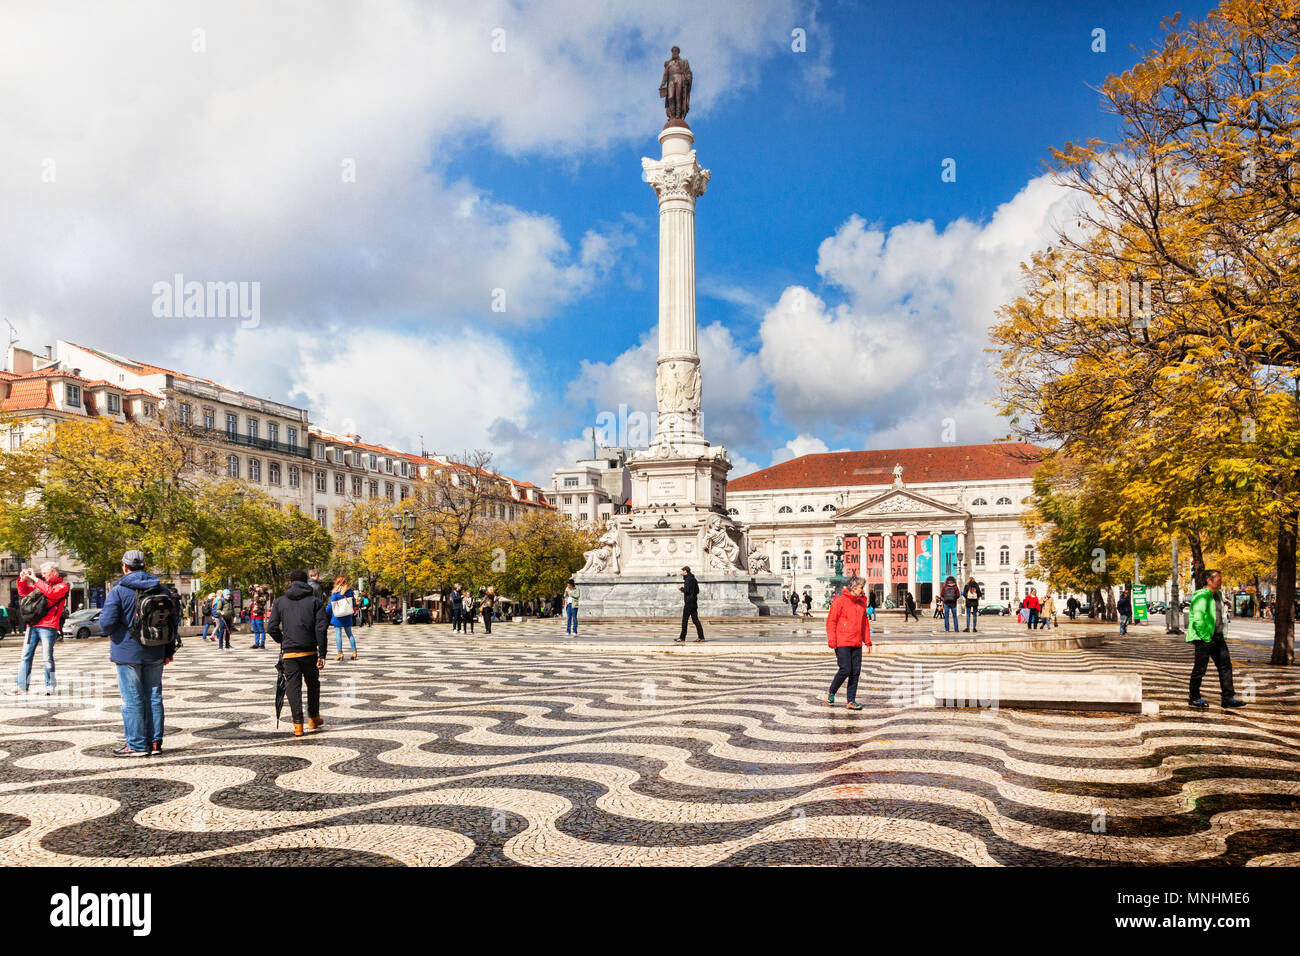 5 mars 2018 : Lisbonne, Portugal - Historique de la place Rossio, avec la colonne de Pedro IV, le soleil du printemps. Banque D'Images